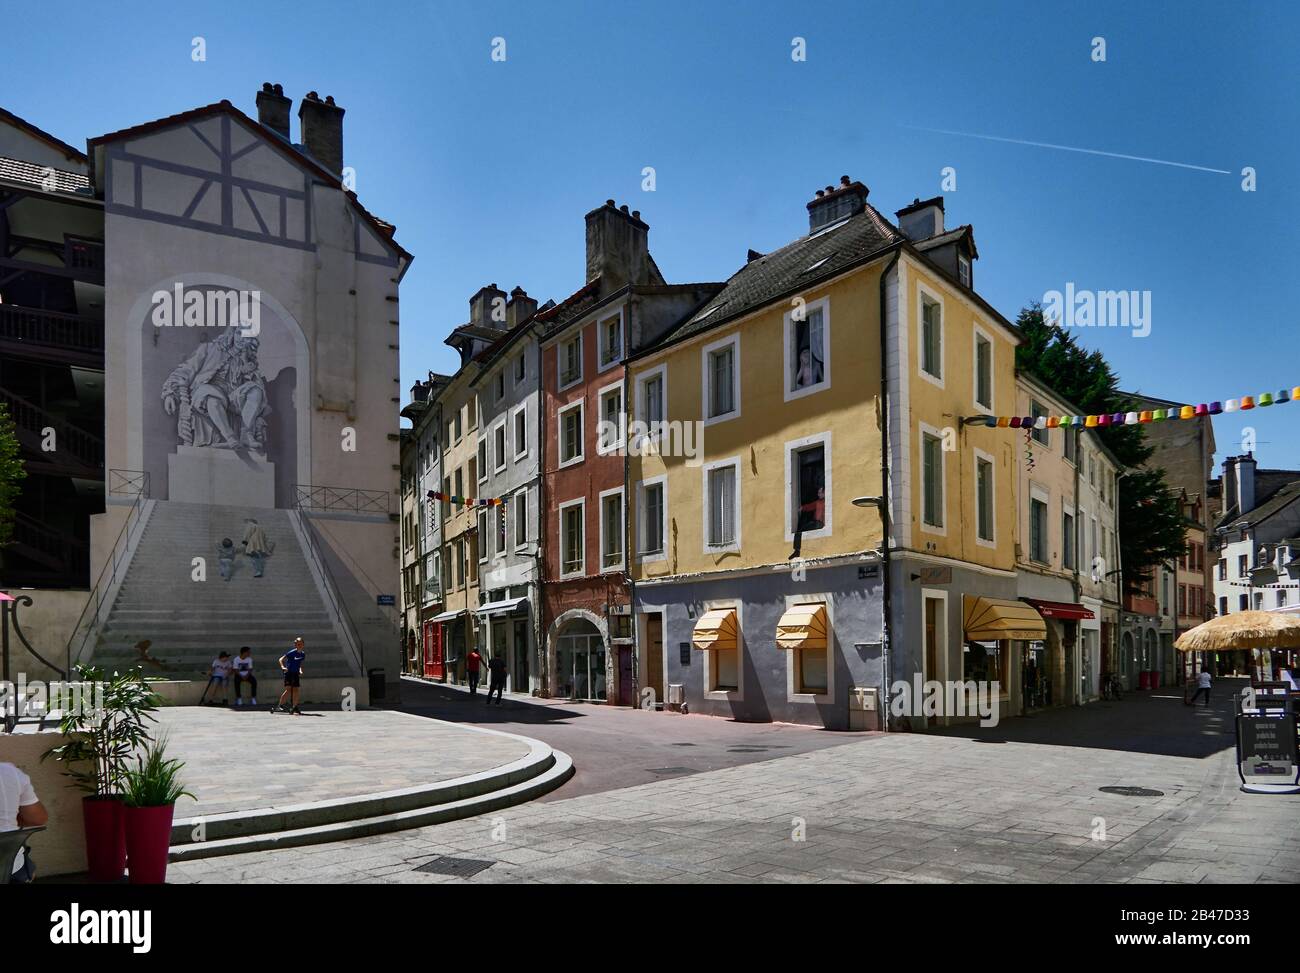 Frankreich, Chalon-sur-Saône, Place du Théâtre, Straßenkunst auf dem Theaterplatz, Wandbild, optische Täuschung Stockfoto